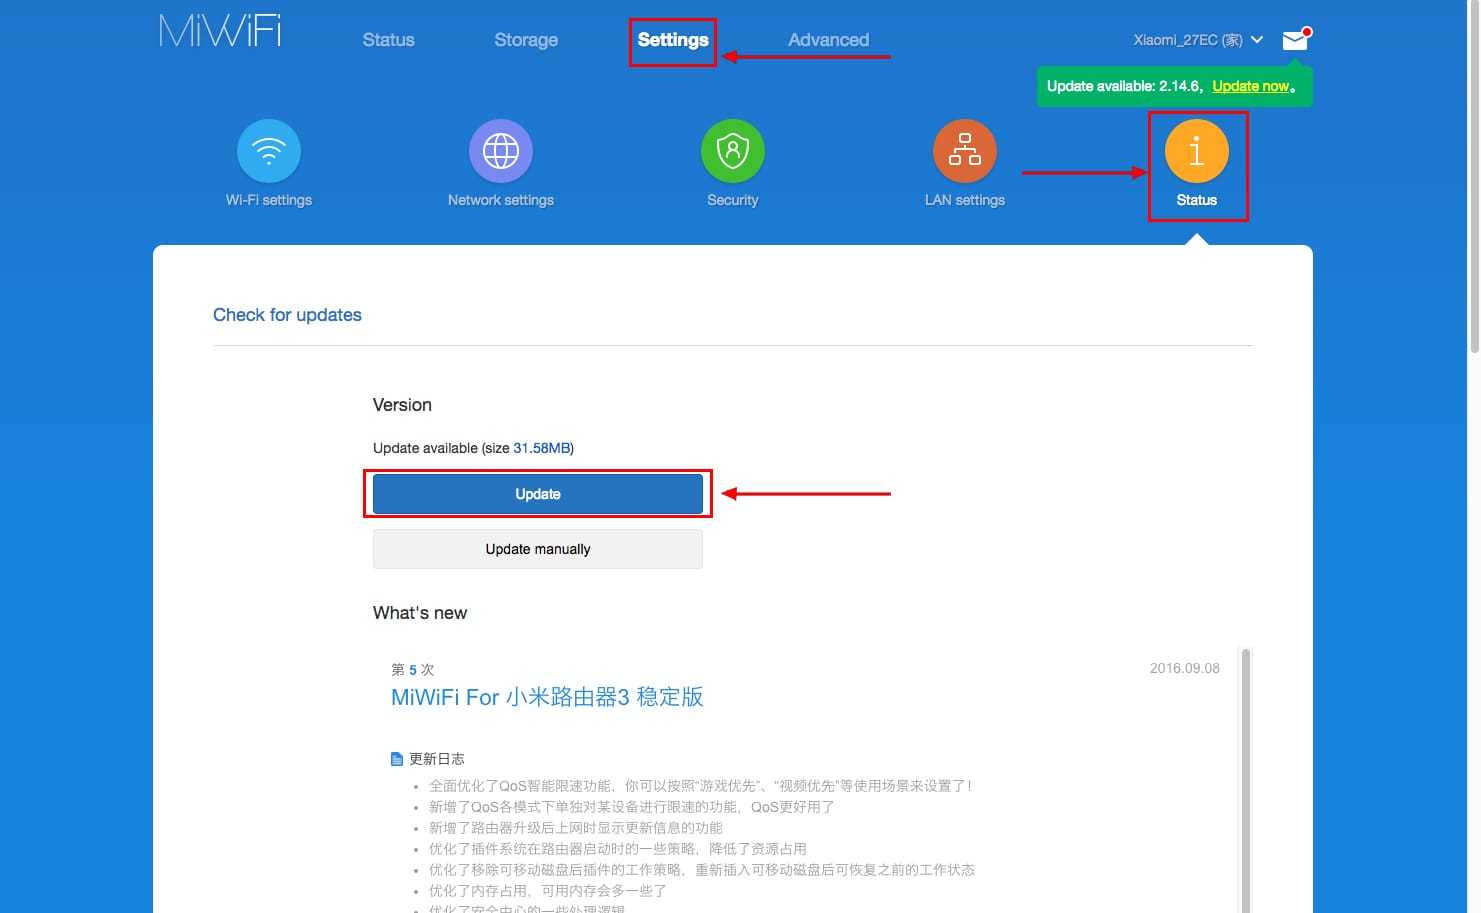 Как зайти в настройки роутера xiaomi и почему не заходит на 192.168.31.1 или miwifi.com